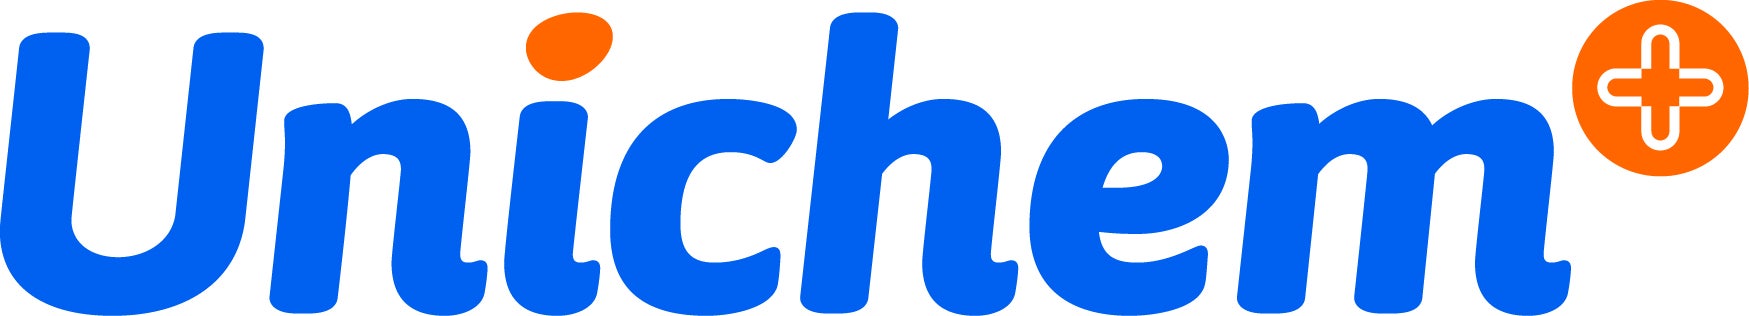 Unichem logo